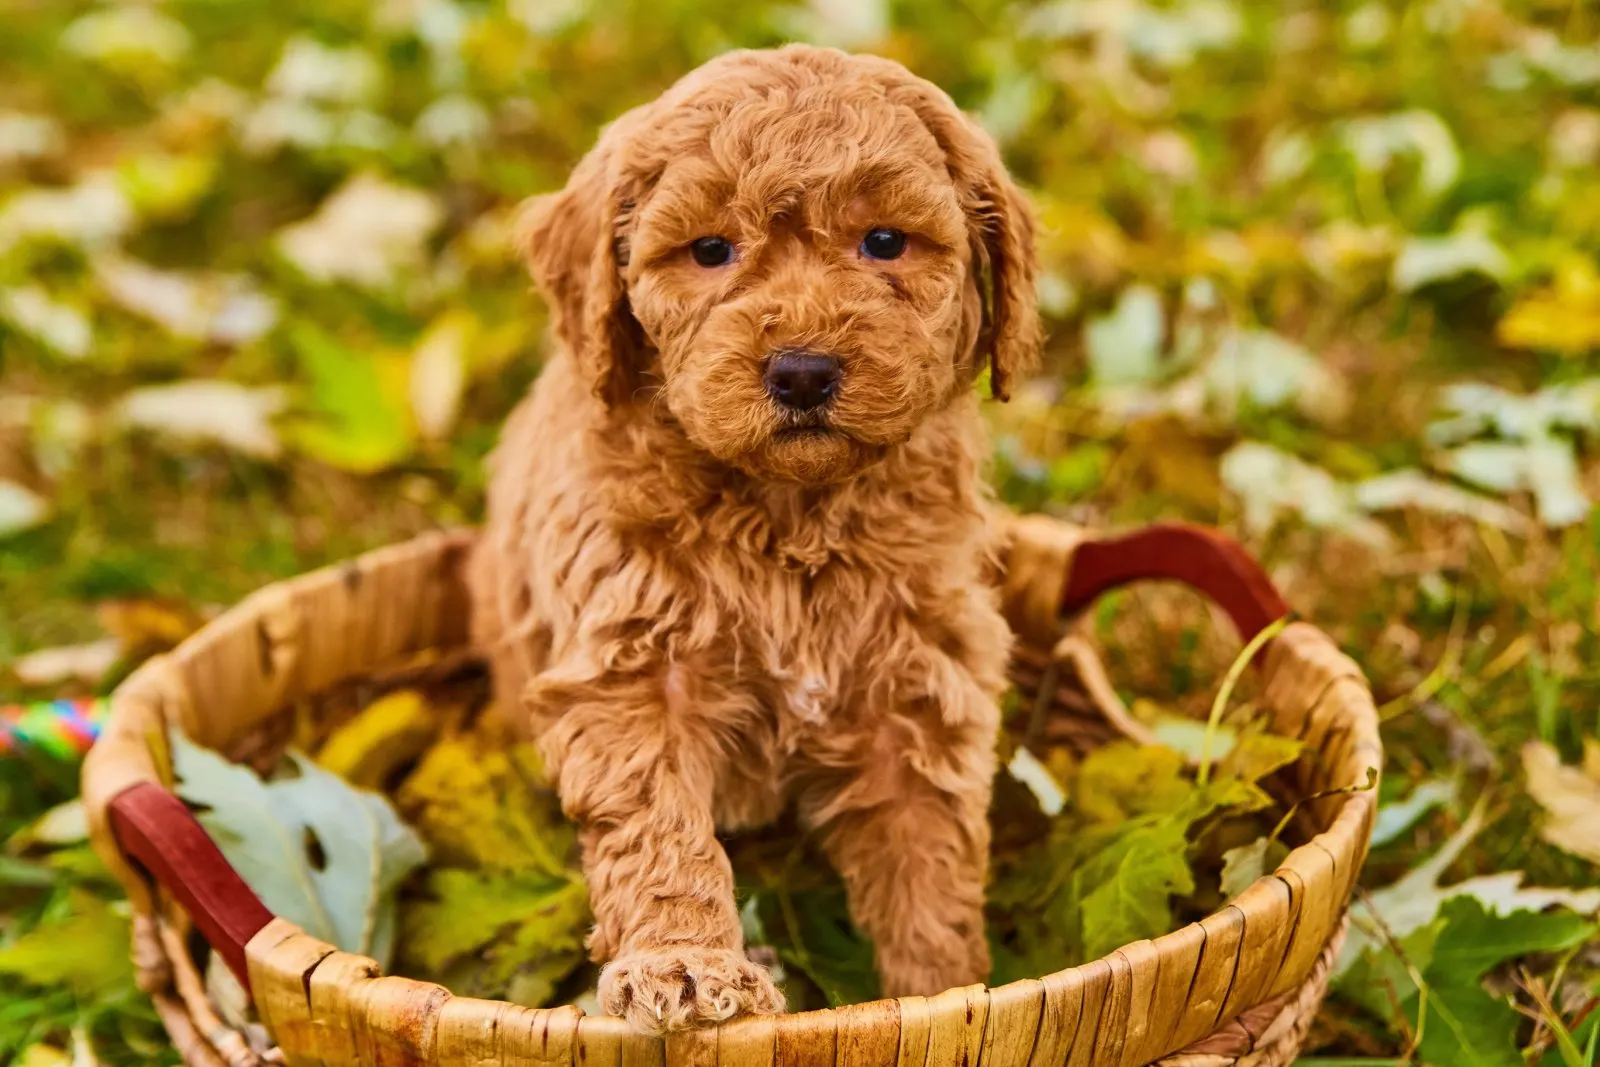 goldendoodle in a basket